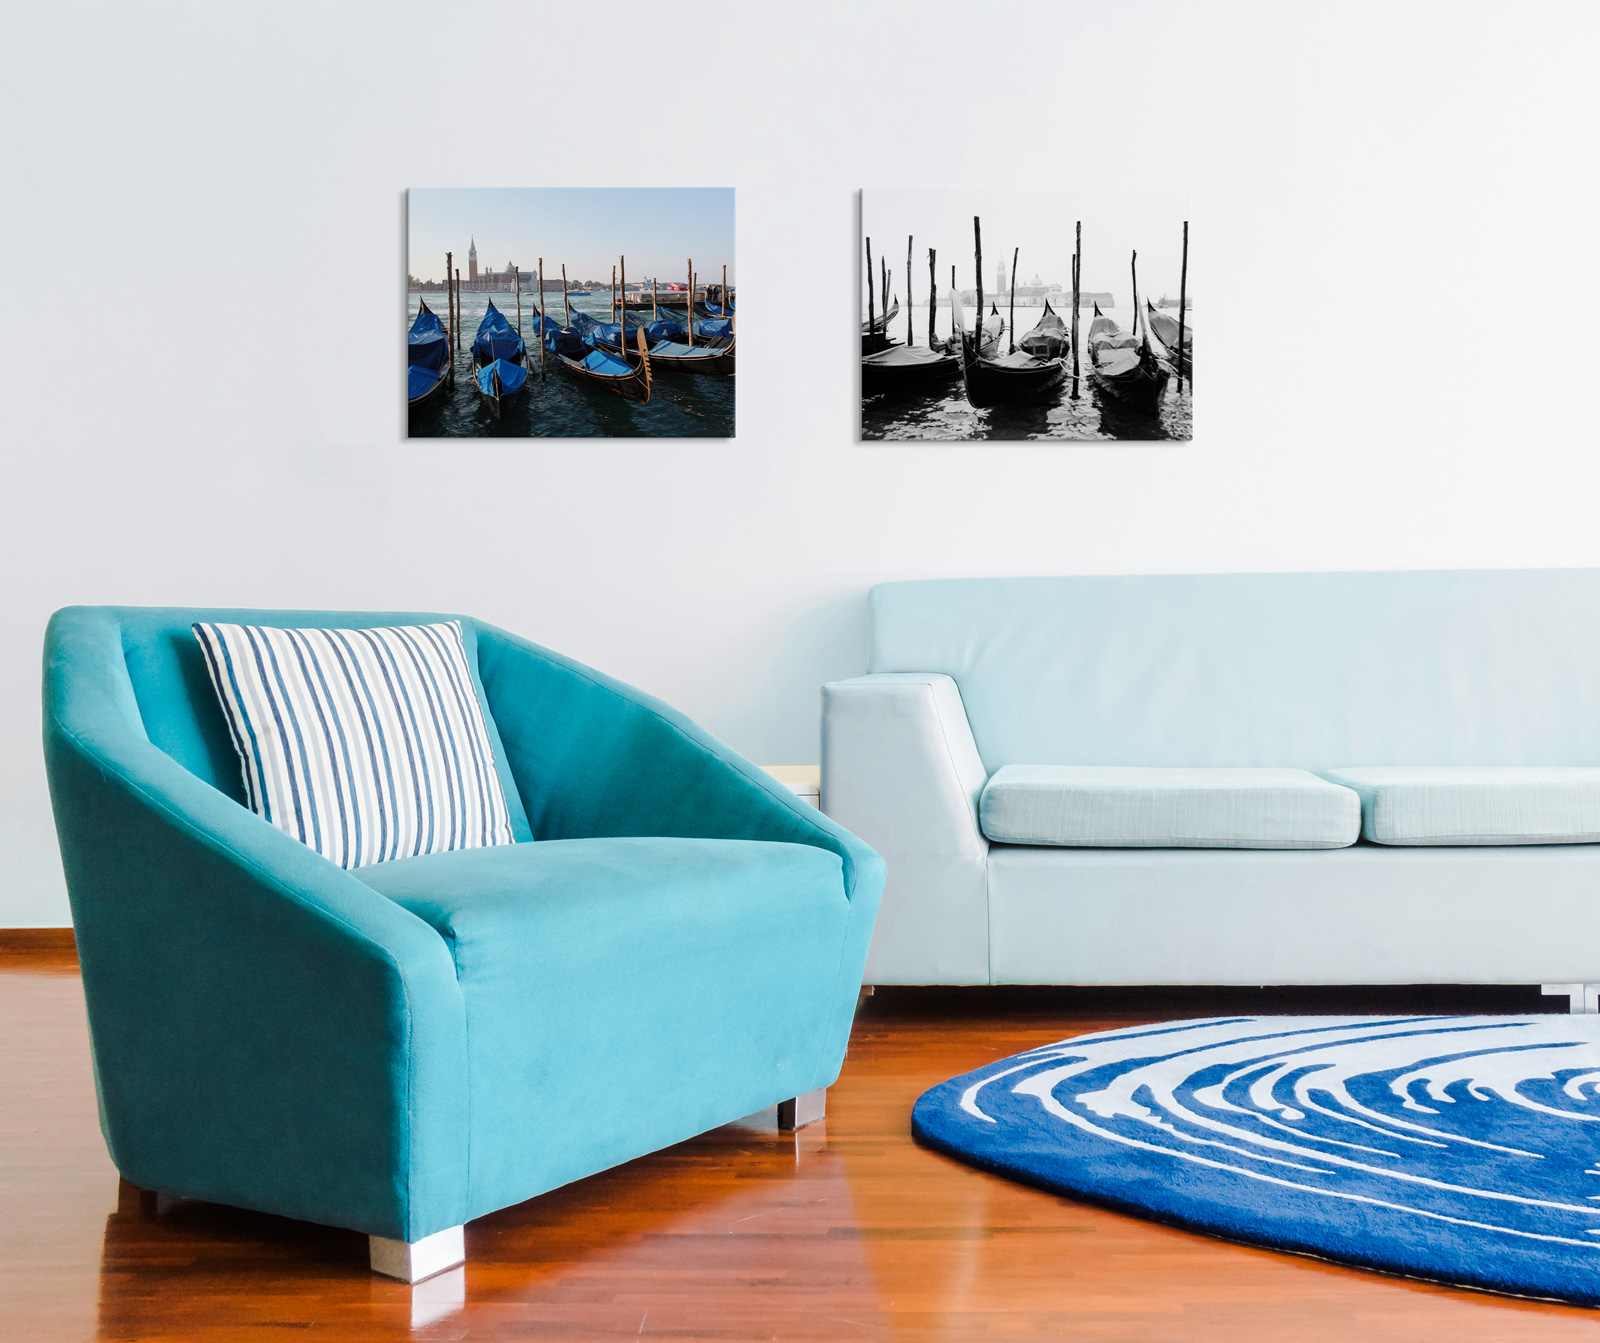 Obrazy z weneckimi gondolami umieszczone w salonie nad niebieską kanapą